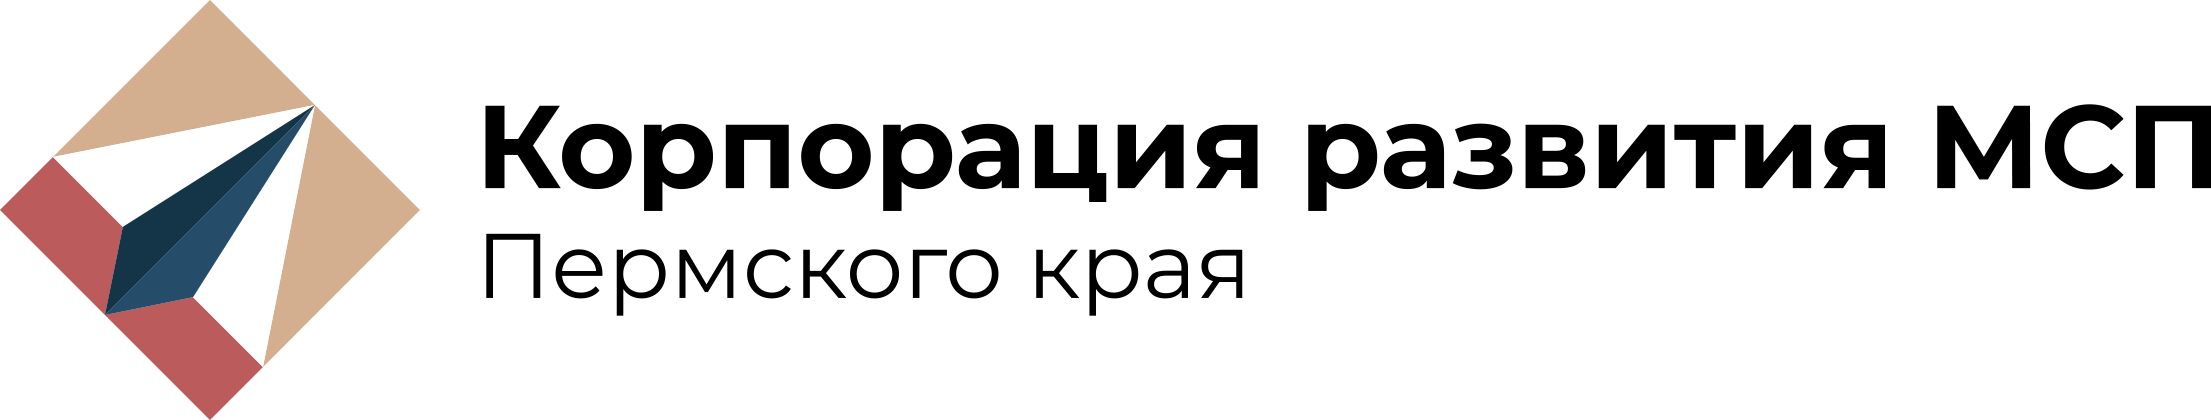 Логотип КР МСП